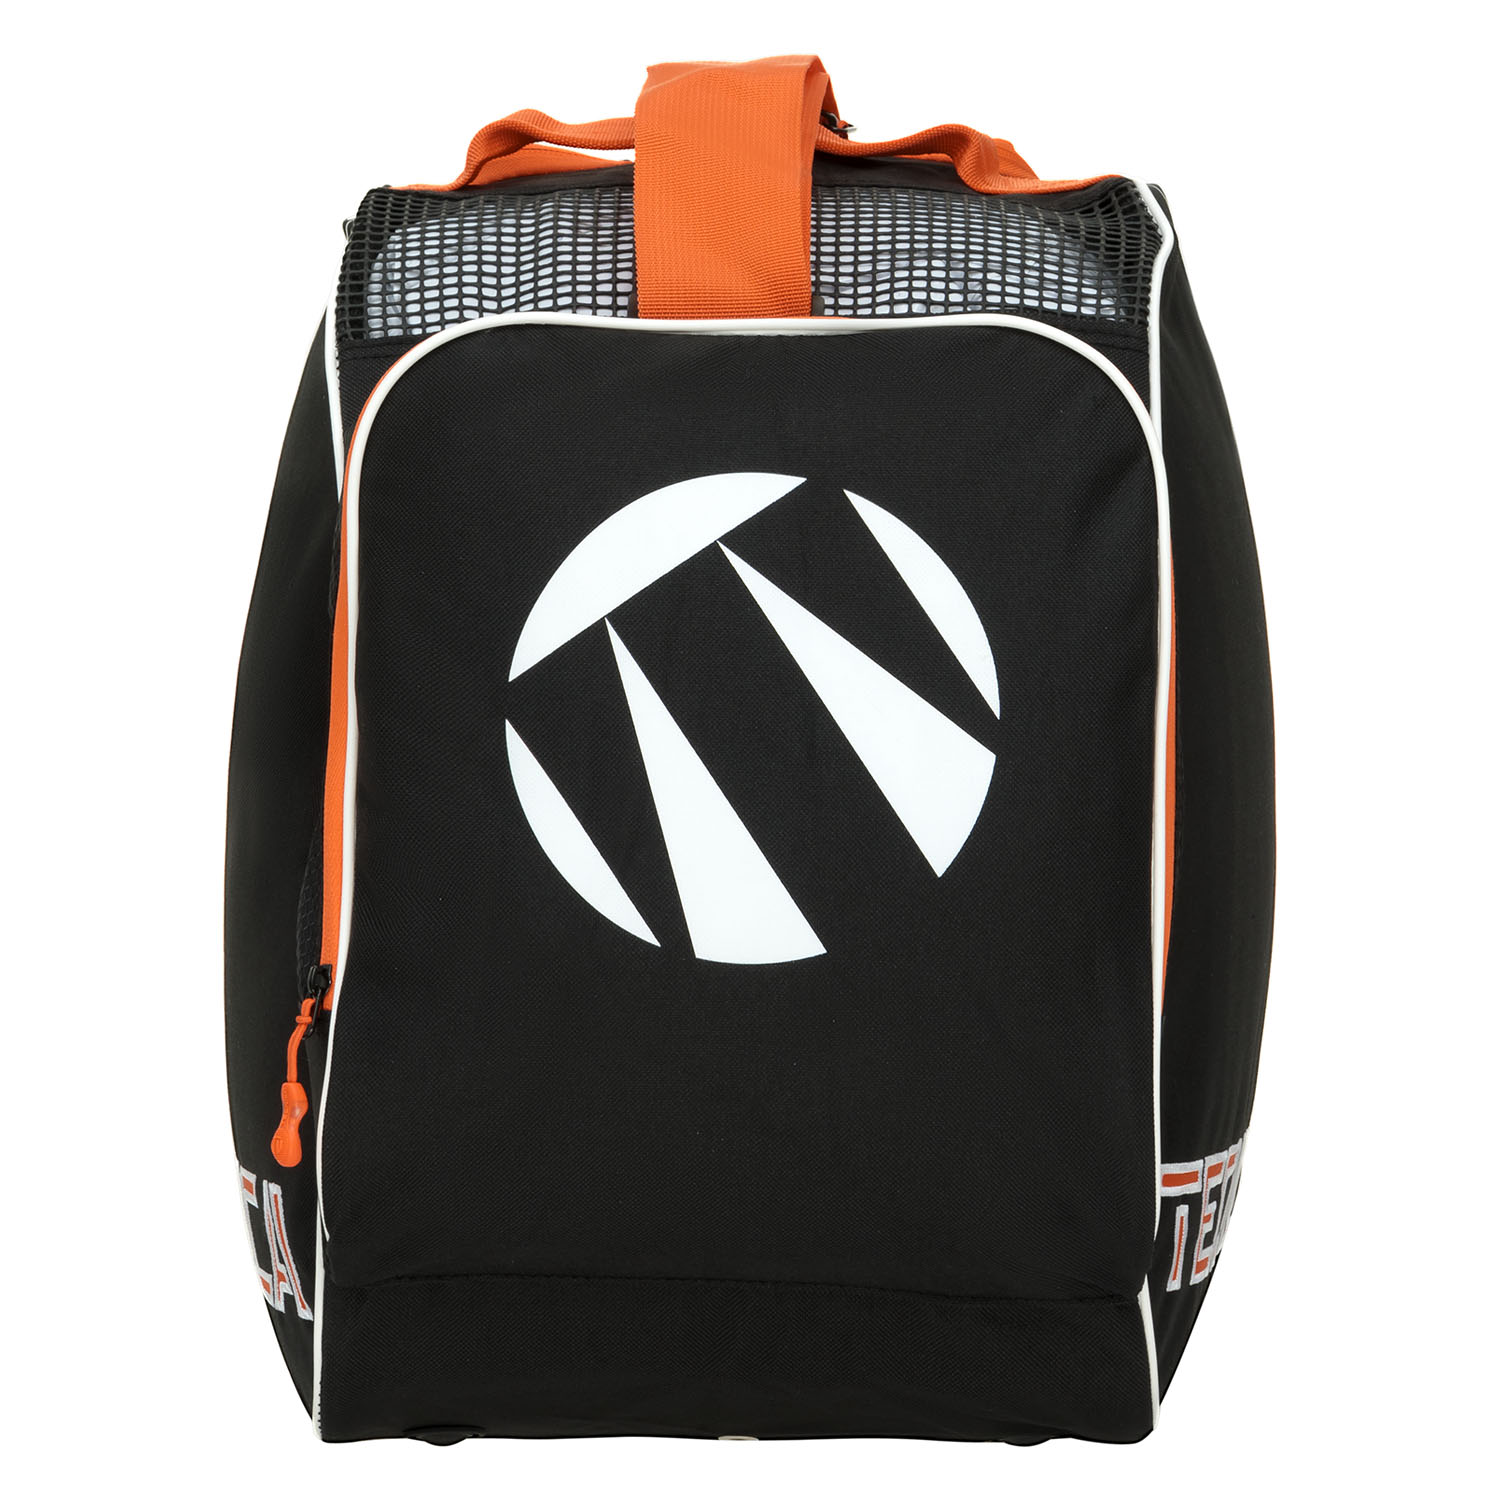 Сумка для ботинок Tecnica Skiboot bag Premium Black/Orange